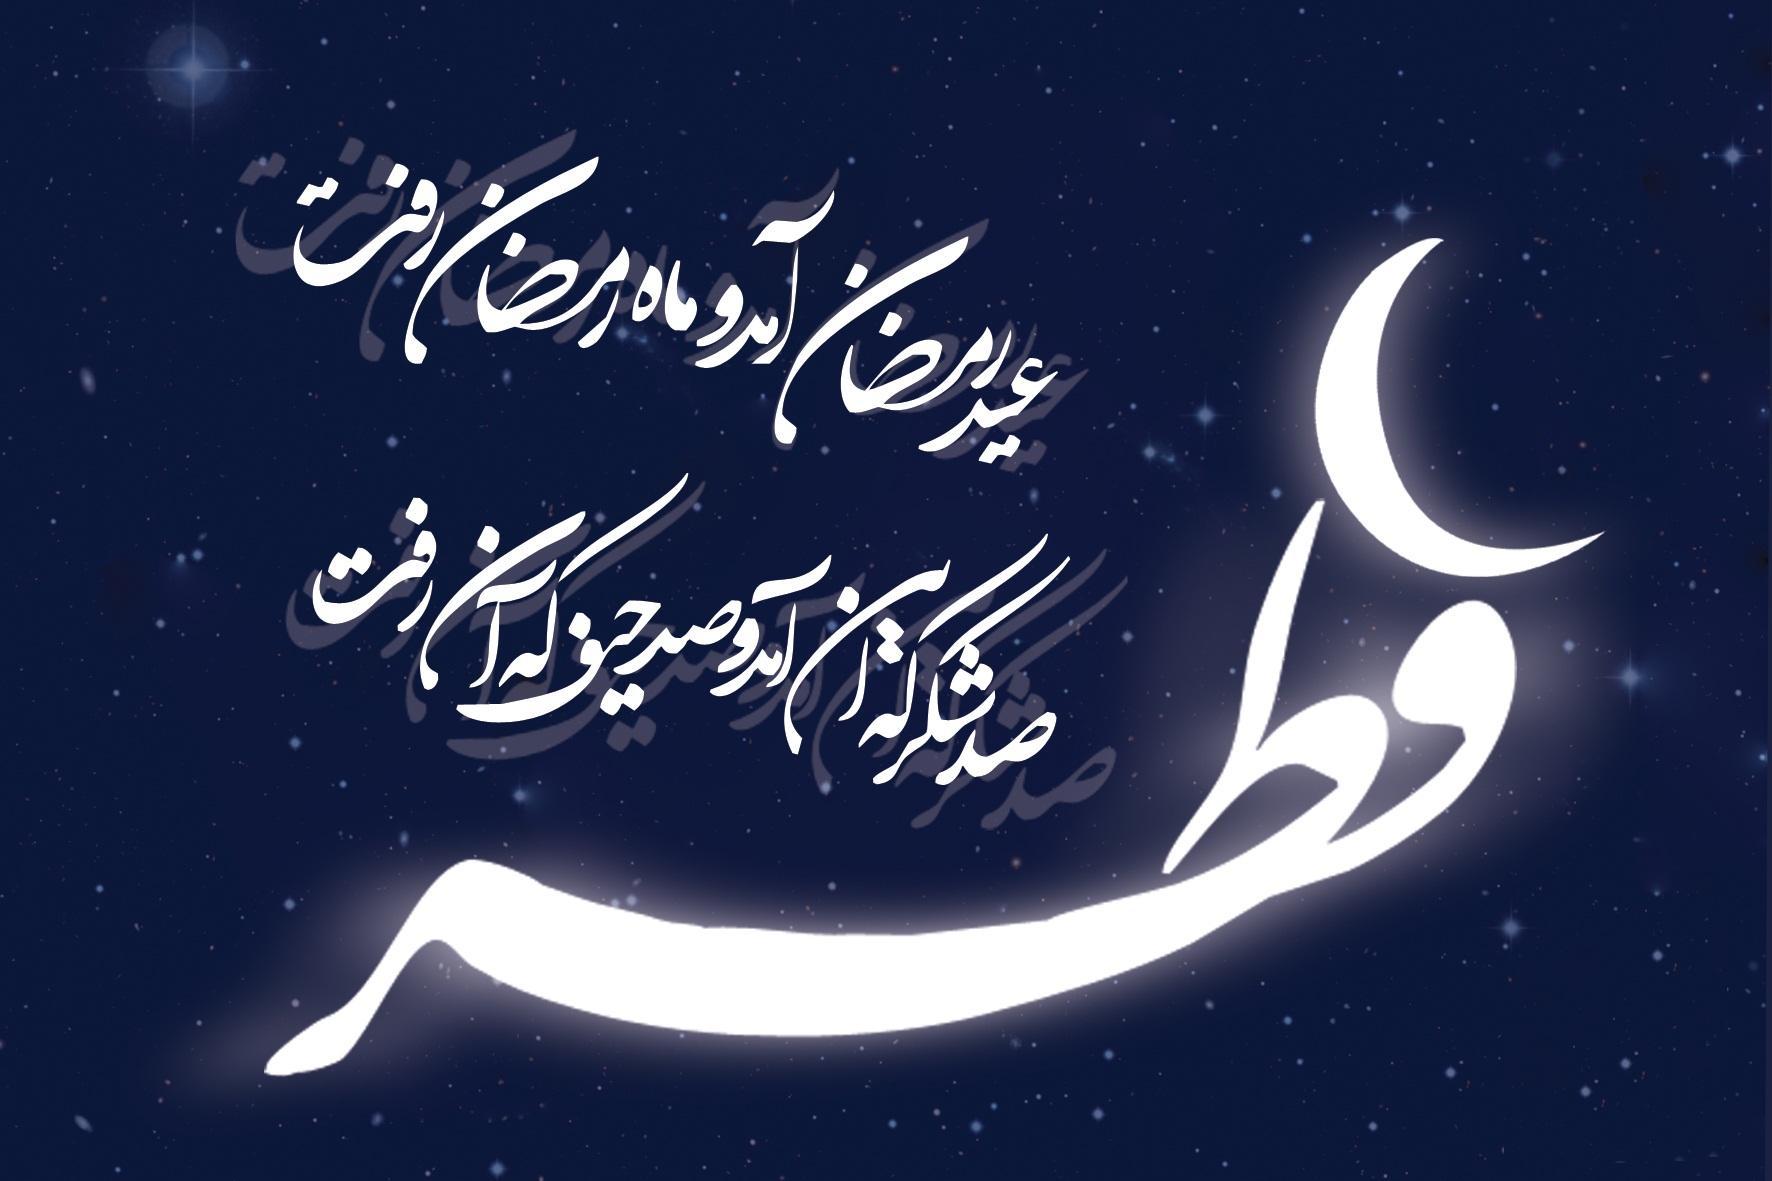 فرارسیدن عید سعید فطر را تبریک و تهنیت عرض می نمائیم